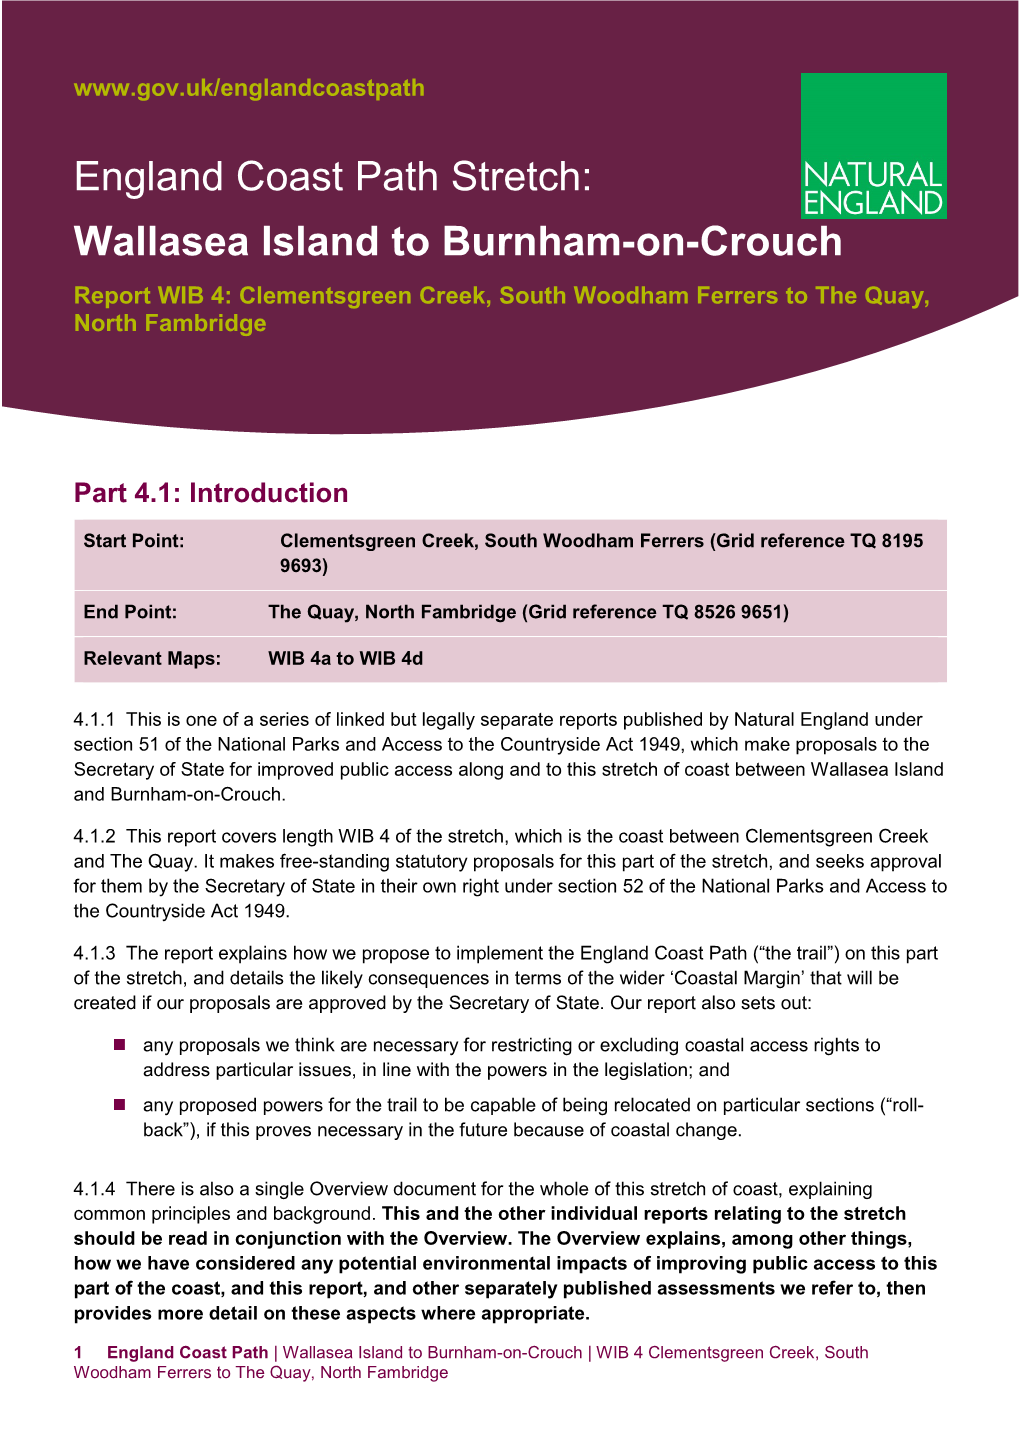 England Coast Path Stretch Wallasea Island to Burnham-On-Crouch